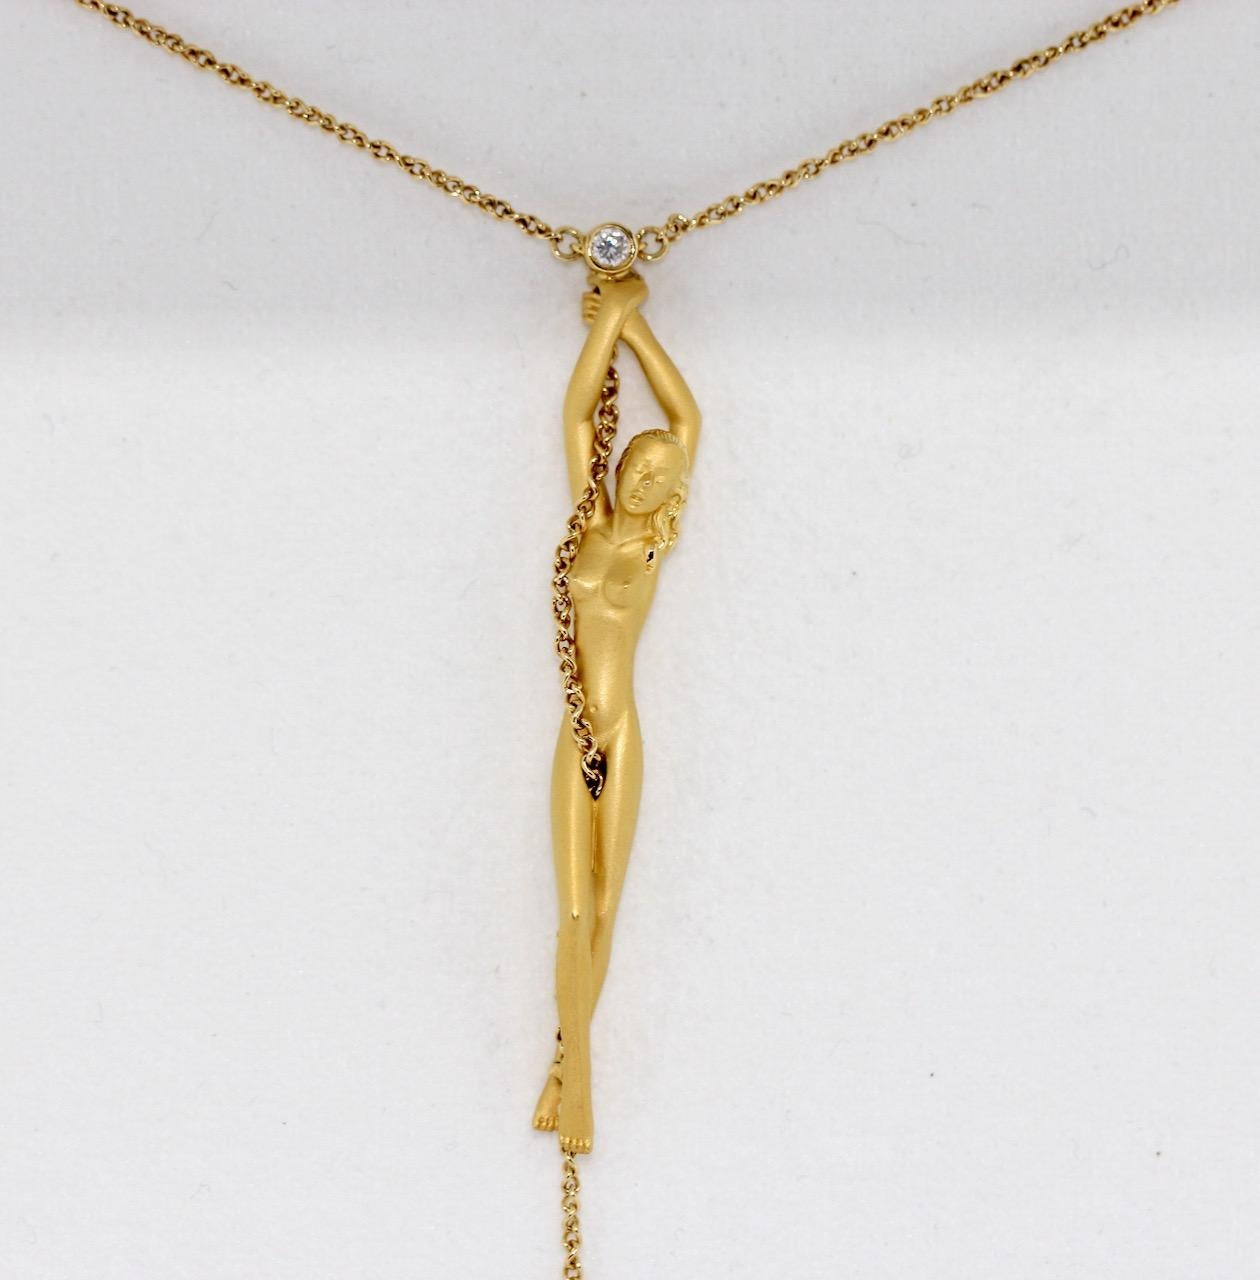 Carrera y Carrera Halskette, Halskette mit Anhänger in Form einer nackten Frau, 18 Karat Gold mit Diamant.

Länge von den Händen (mit Diamant) bis zu den Füßen, ohne Kette gemessen: 60 mm.

Inklusive Originalverpackung und Echtheitszertifikat